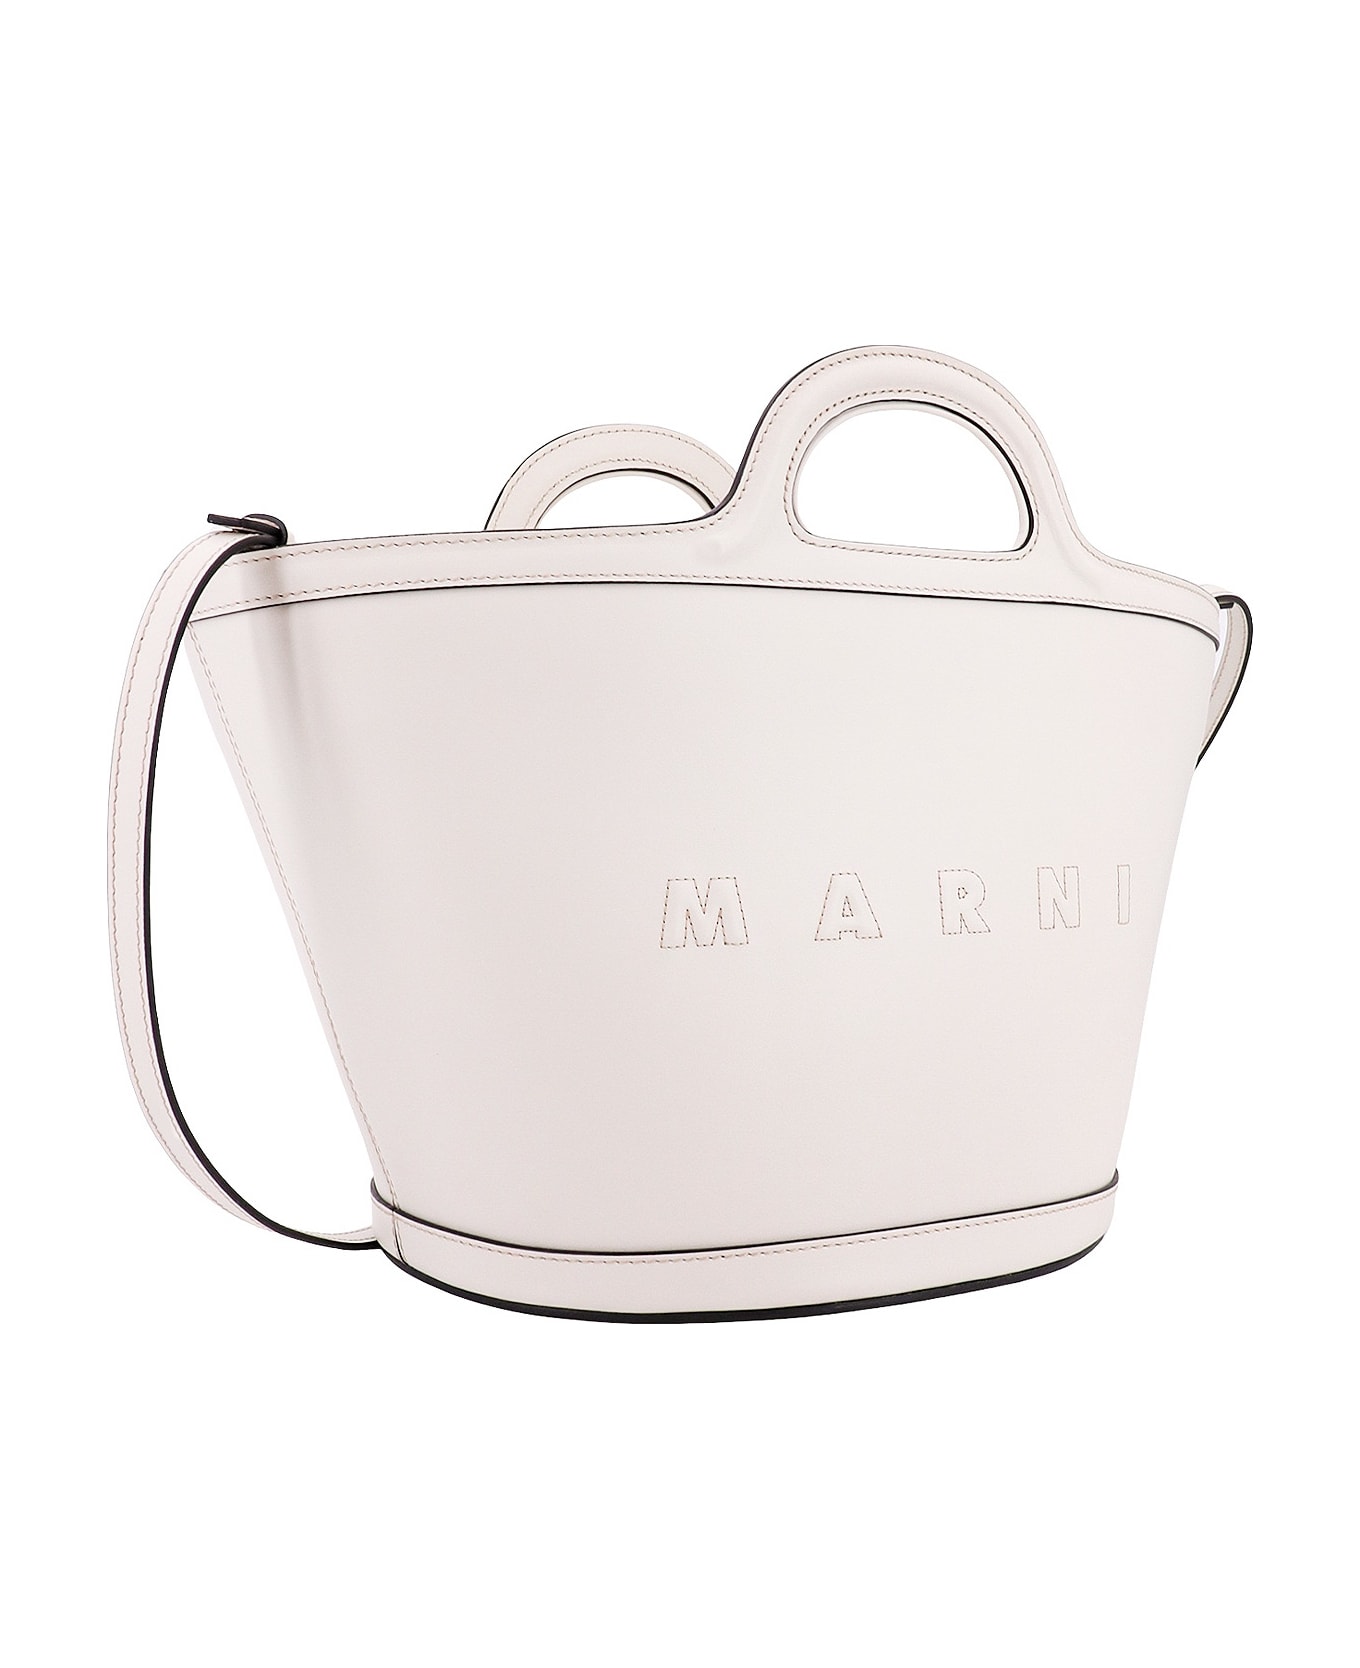 Marni Tropicalia Handbag - White トートバッグ